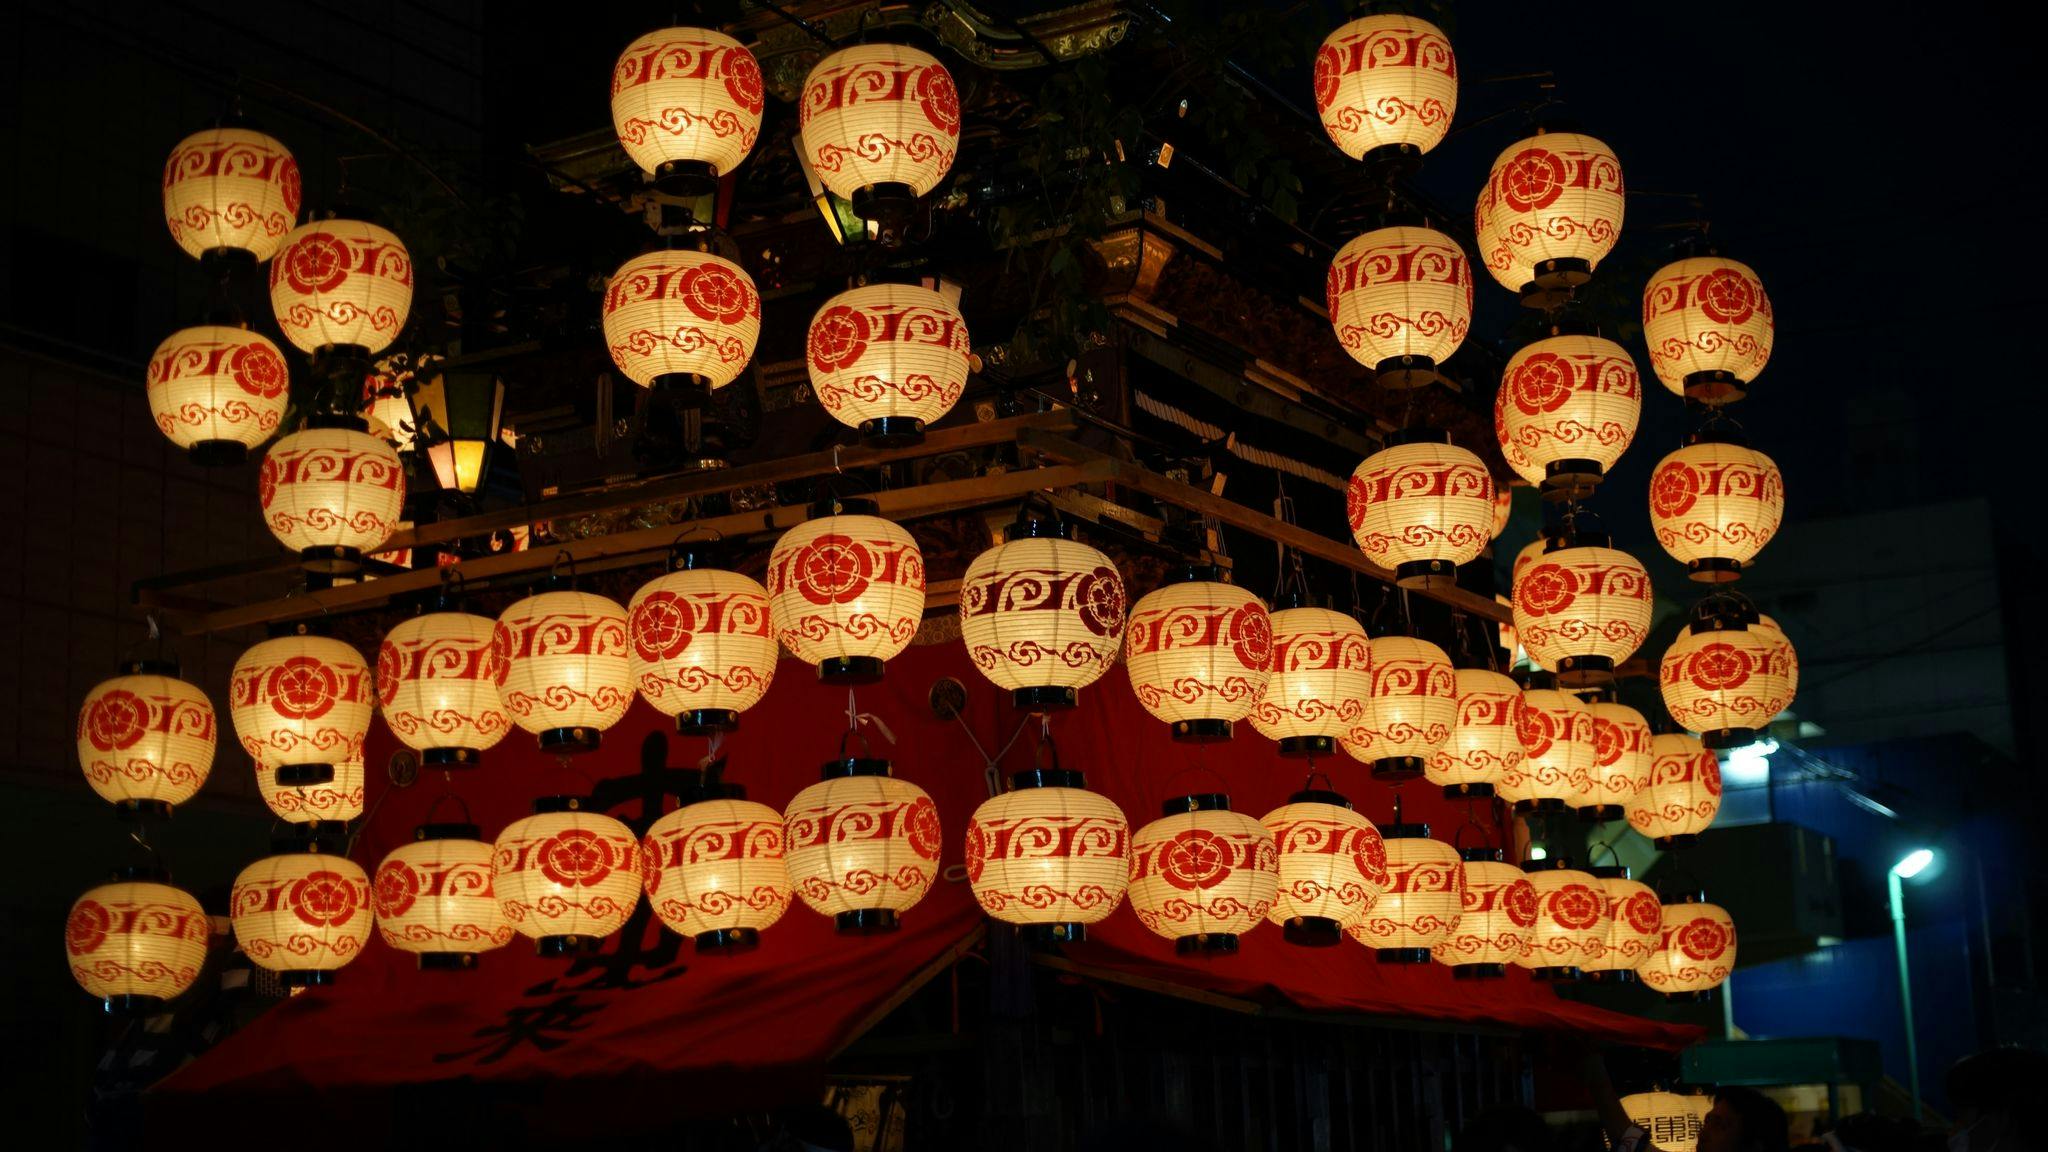 Float decorated with lanterns - symbolic image